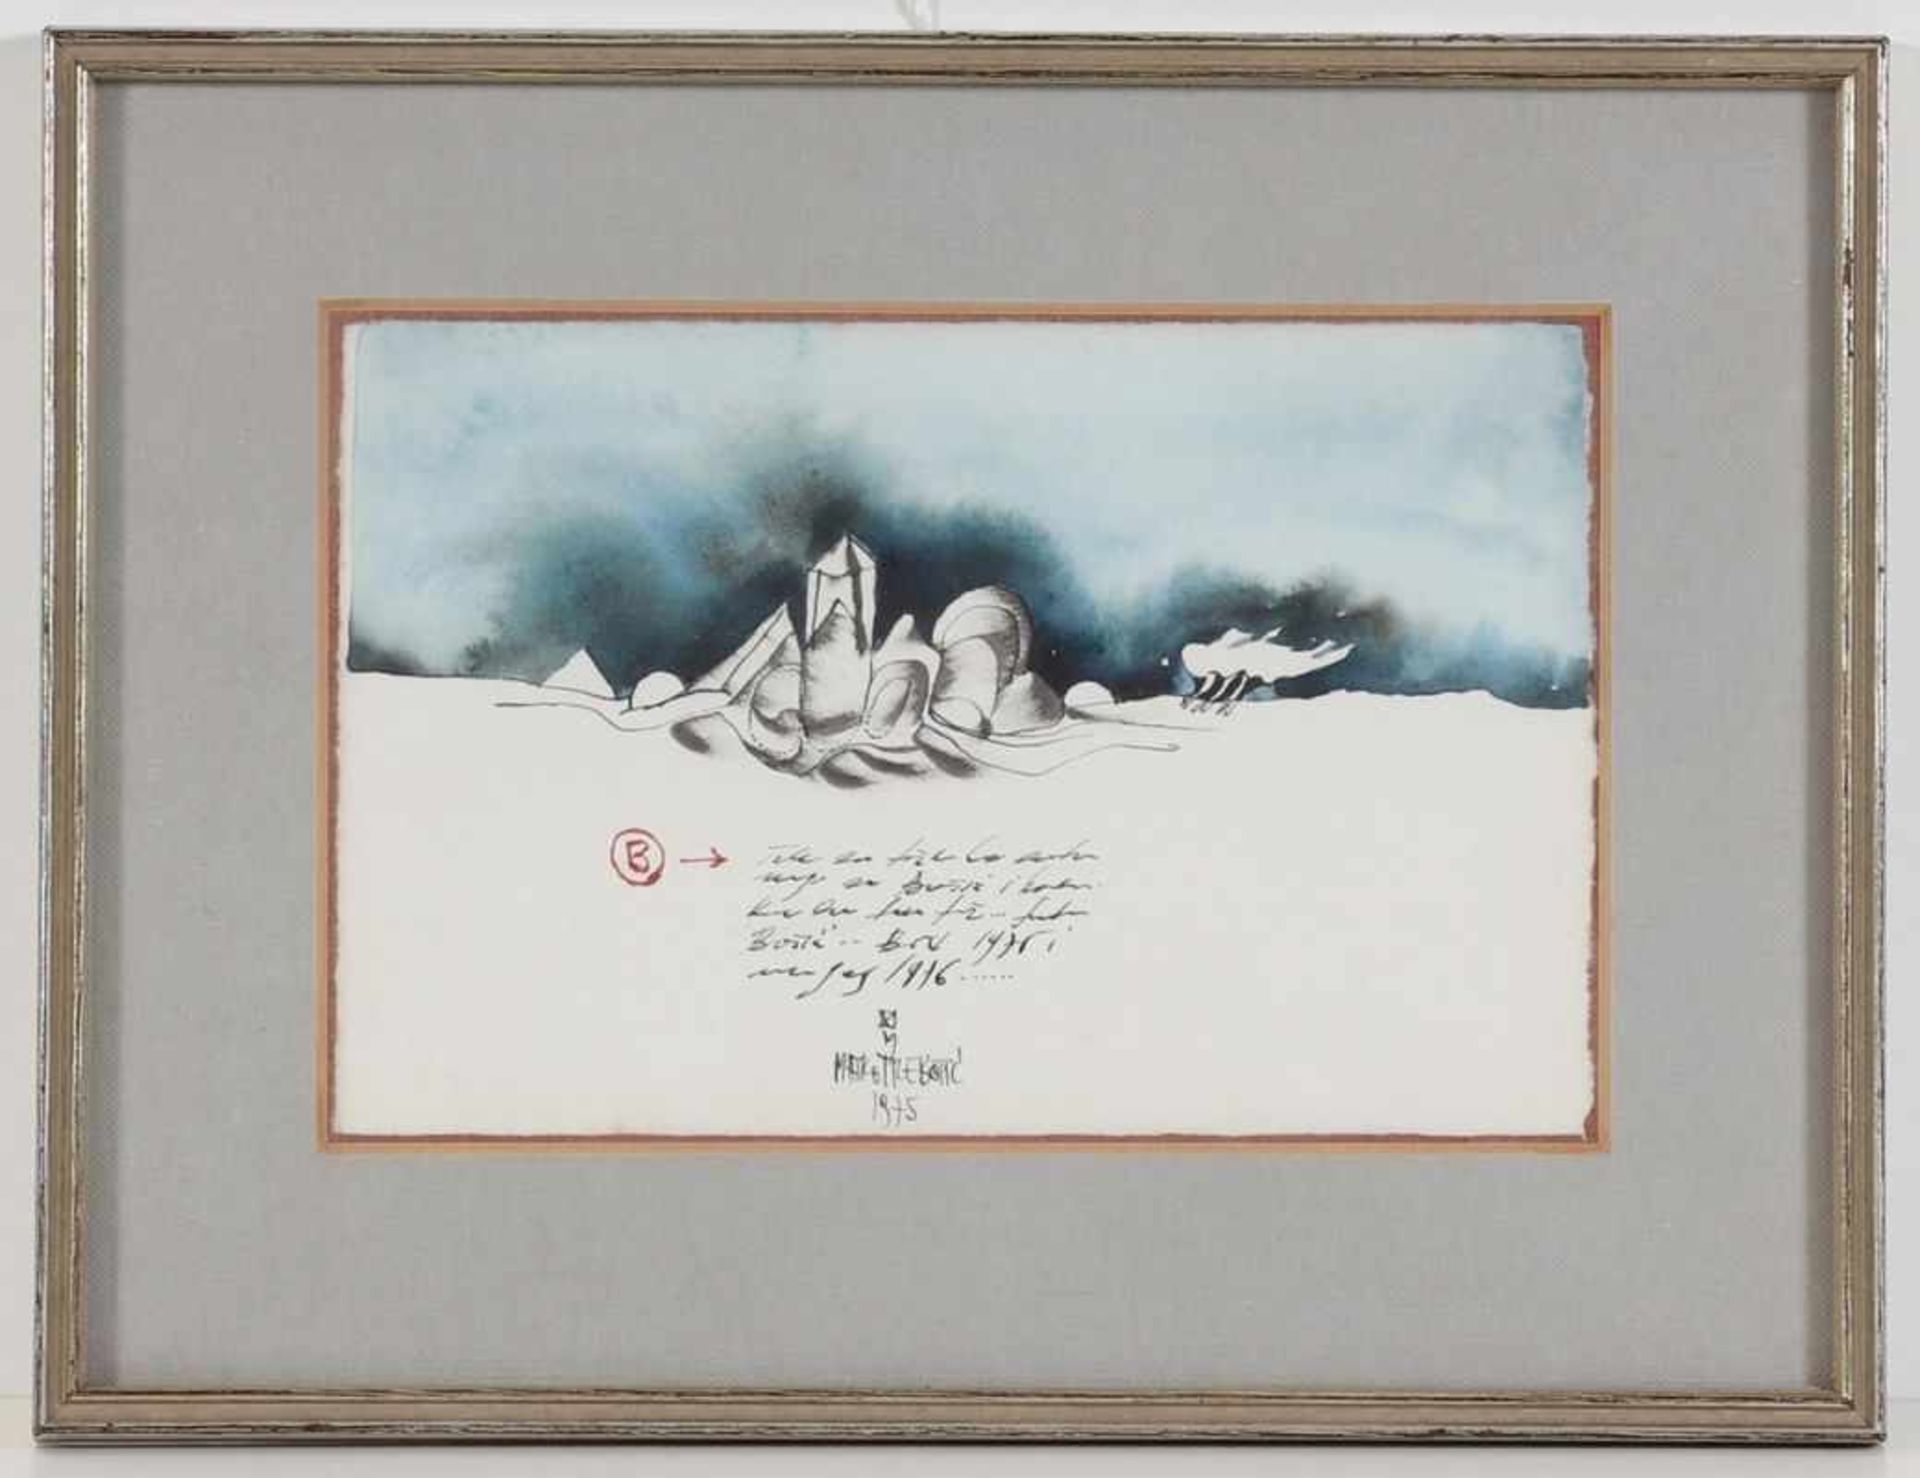 Matko Trebotic1935 Milna - Komposition - Aquarell und Tusche/Papier. 11,4 x 17,5 cm. Sign. und